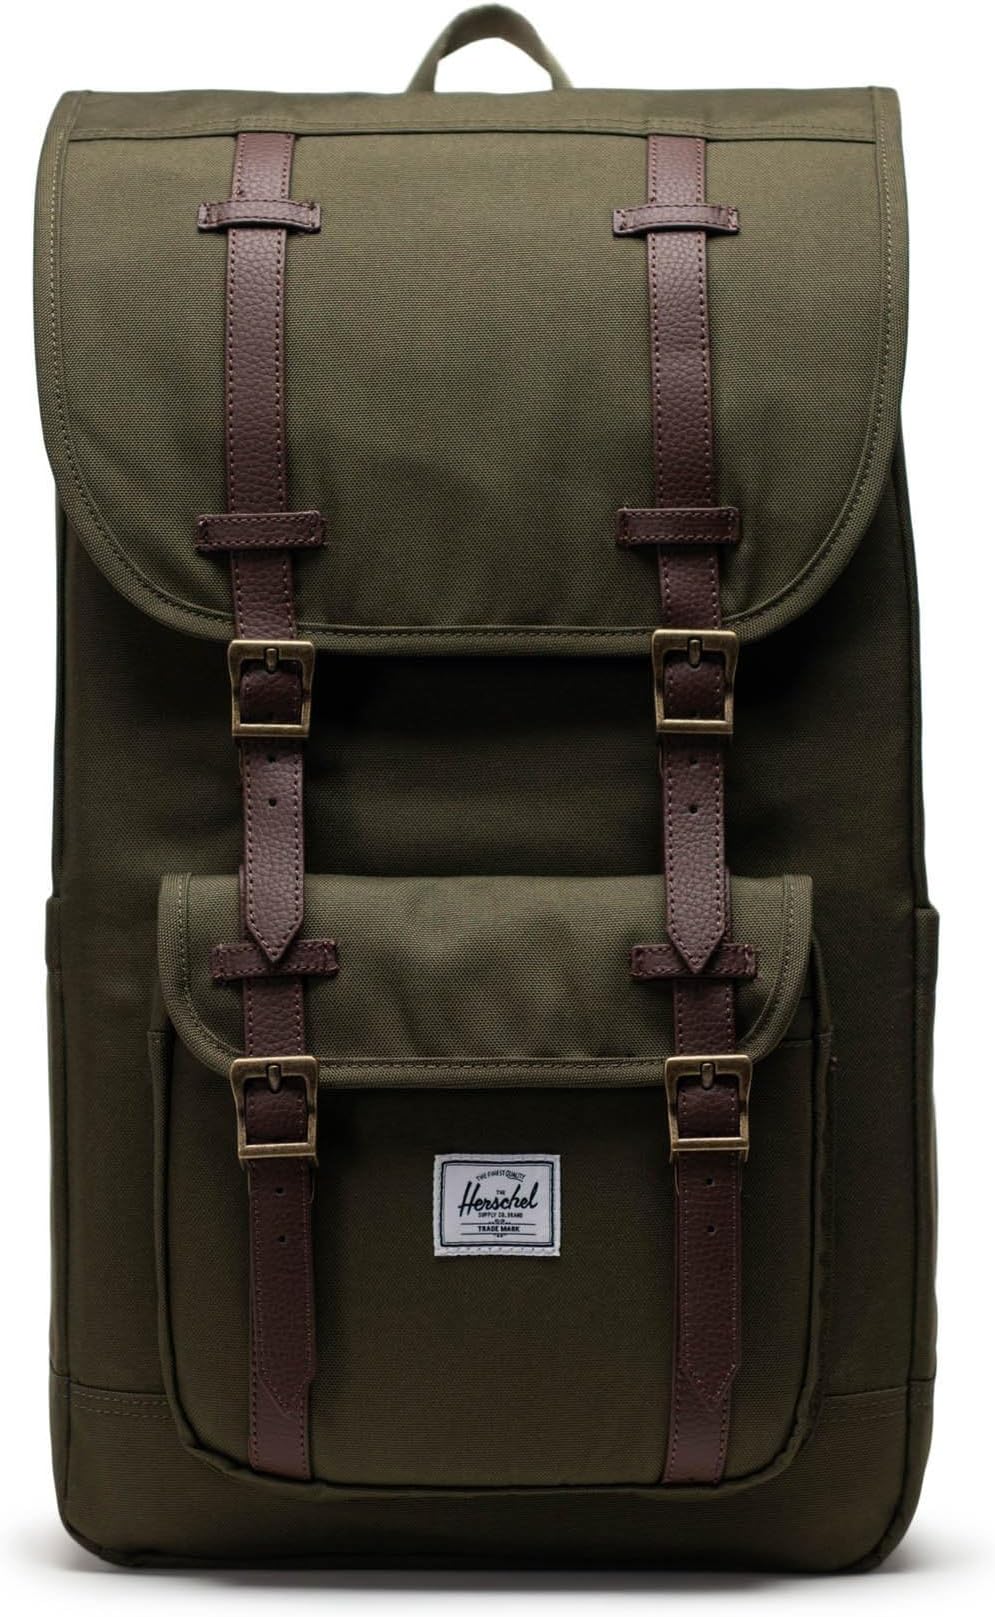 рюкзак classic x large herschel supply co цвет ivy green Рюкзак Little America Backpack Herschel Supply Co., цвет Ivy Green